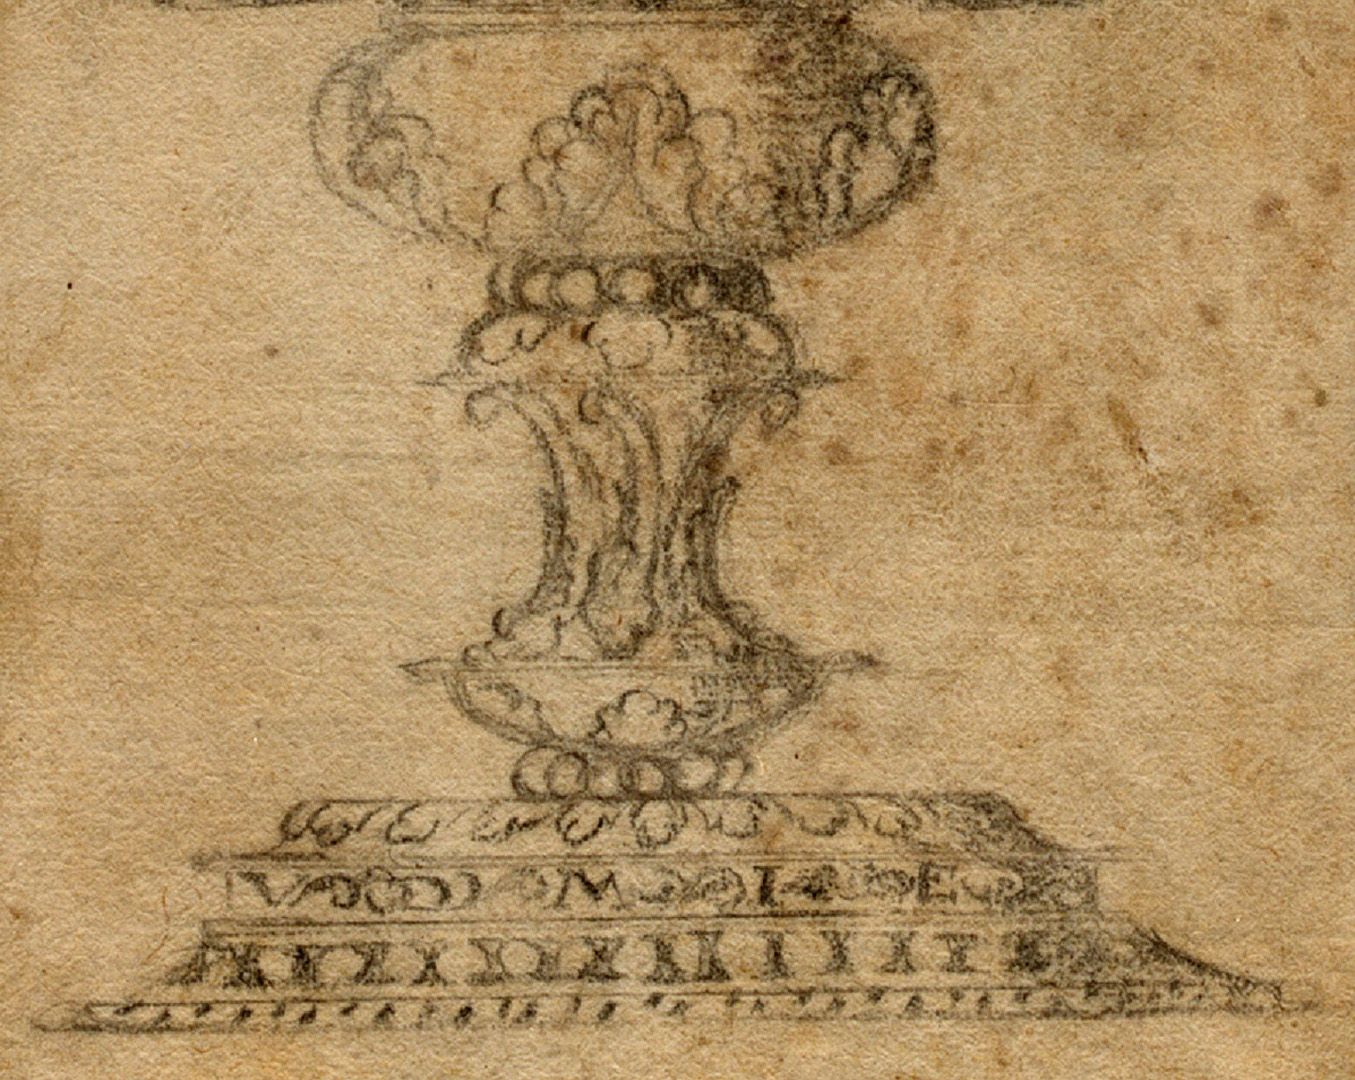 Deckelpokal unteres Blattdrittel, Fuß des Pokals die Buchstaben "VDMIE" (Verbum Domini Manet In Eternum?)